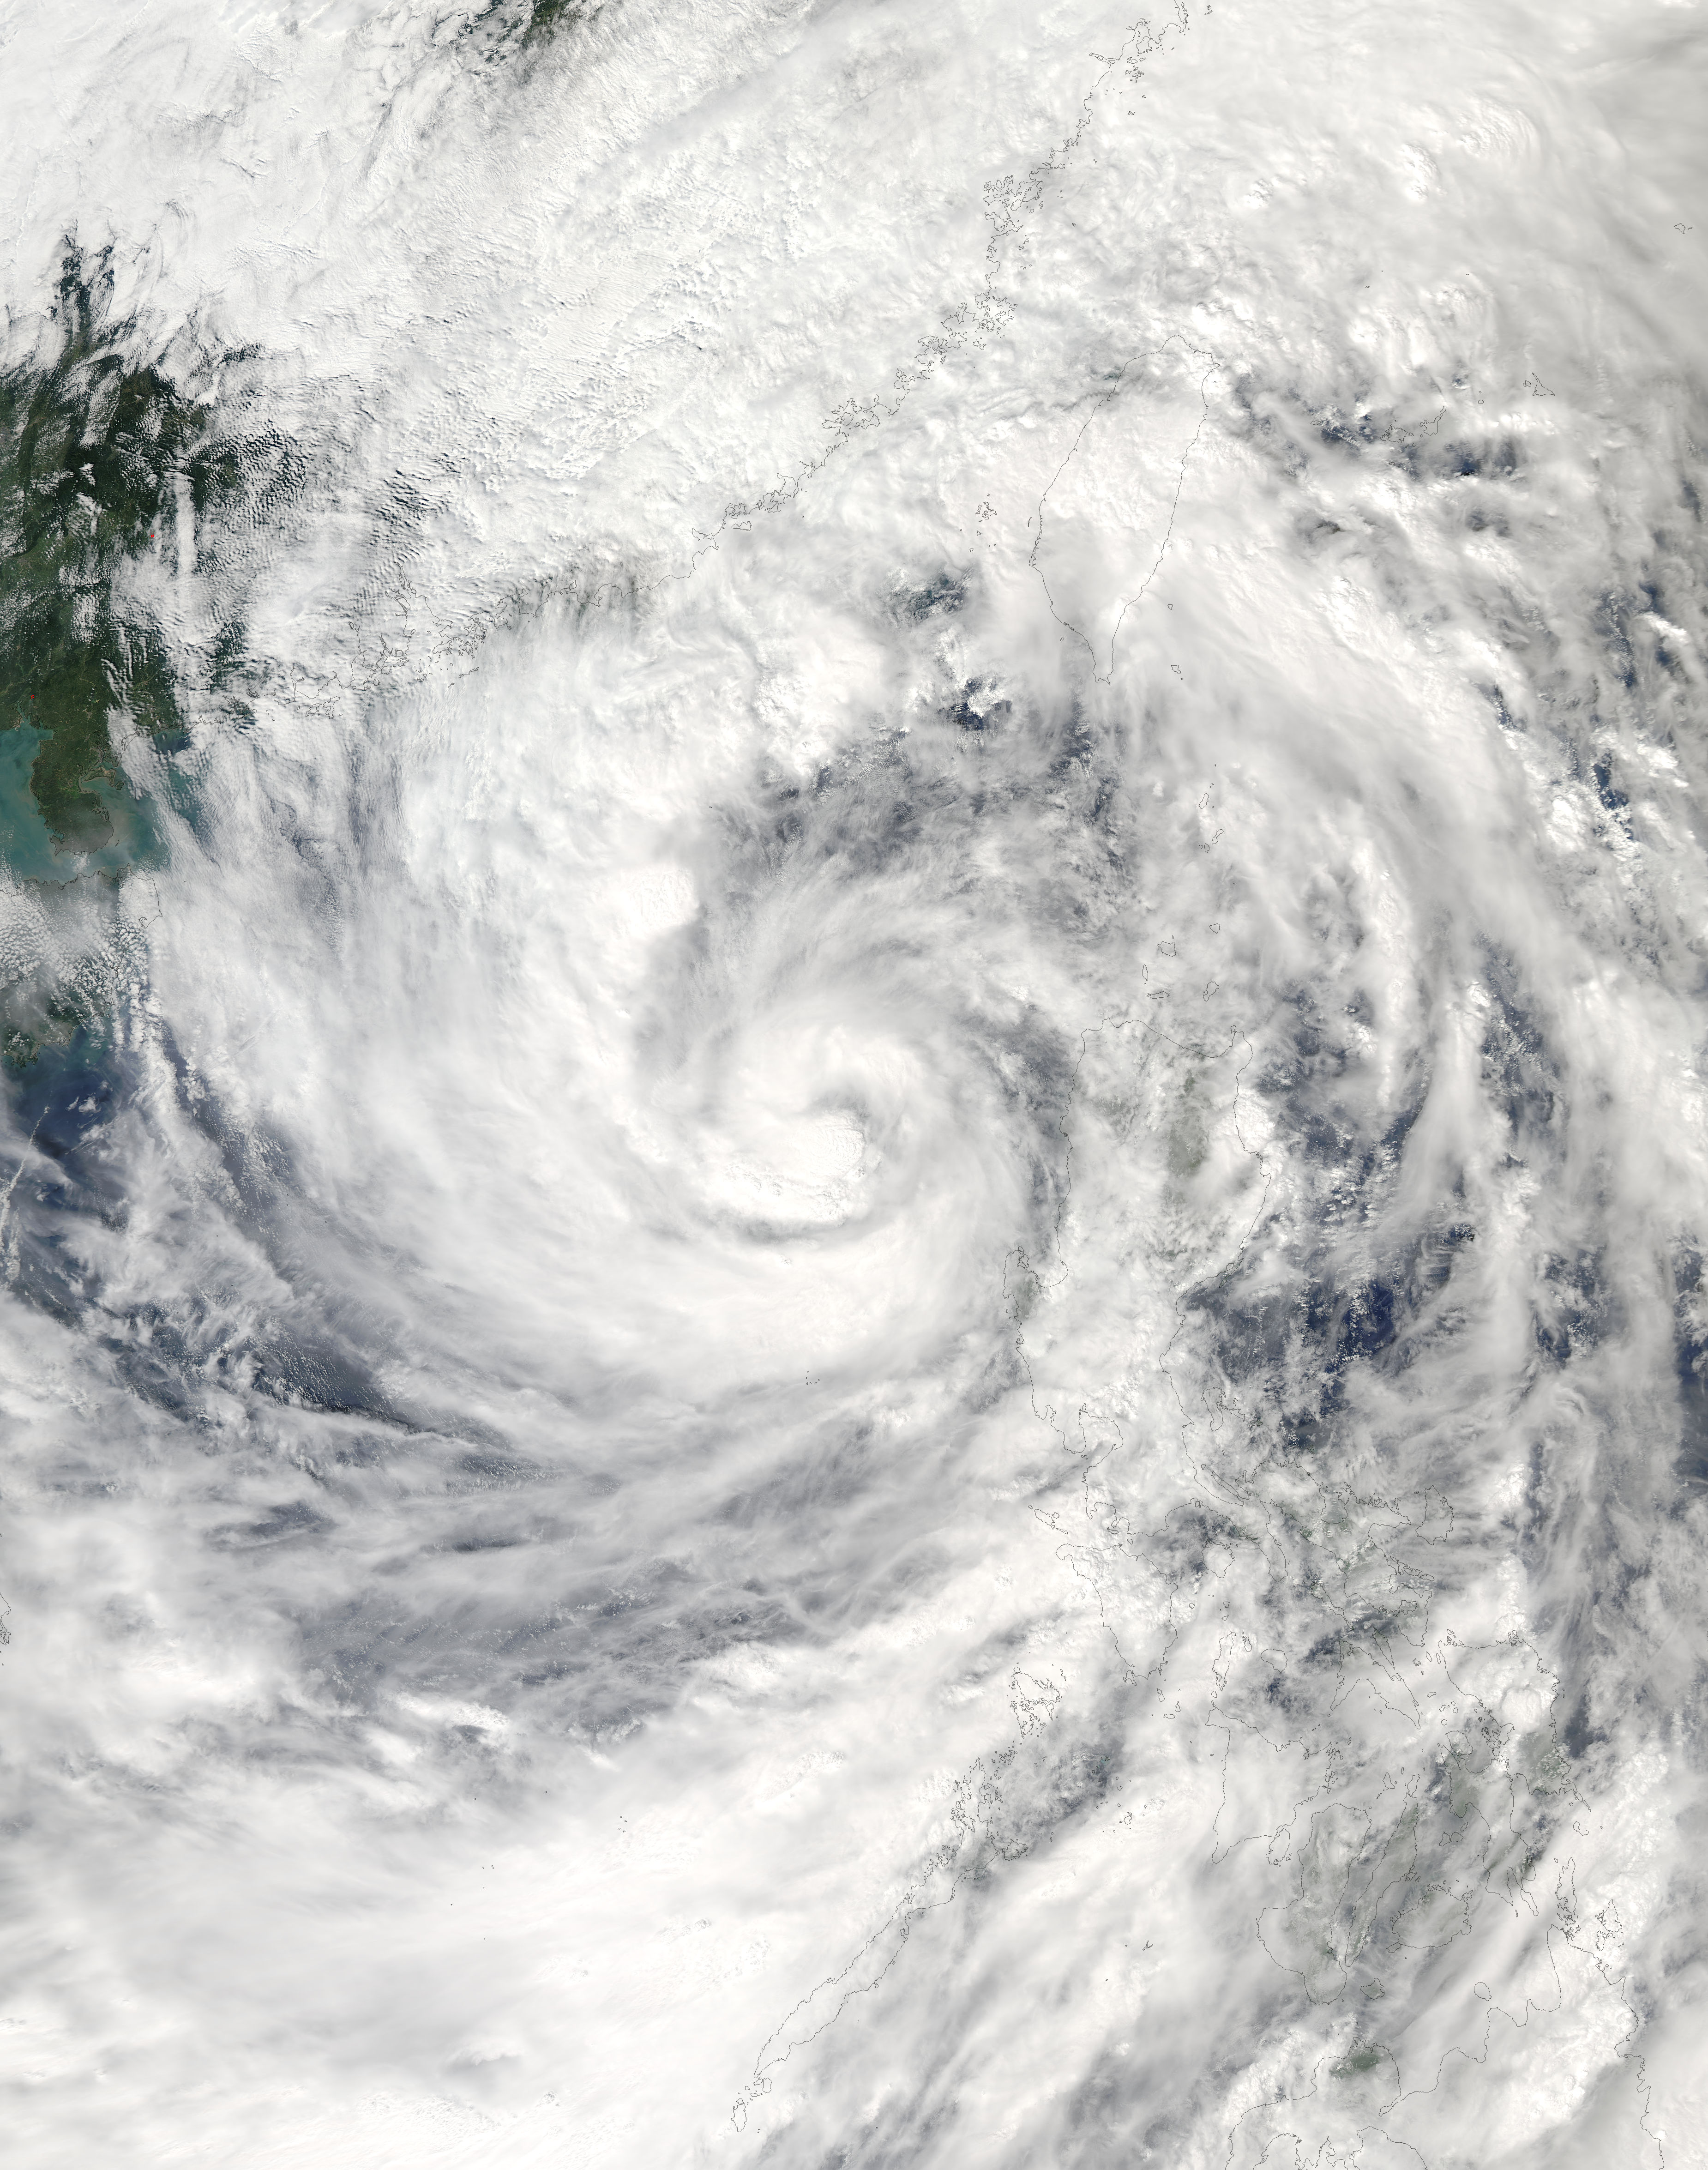 NASA Visible Earth Tropical Storm Khanun (24W) in the South China Sea